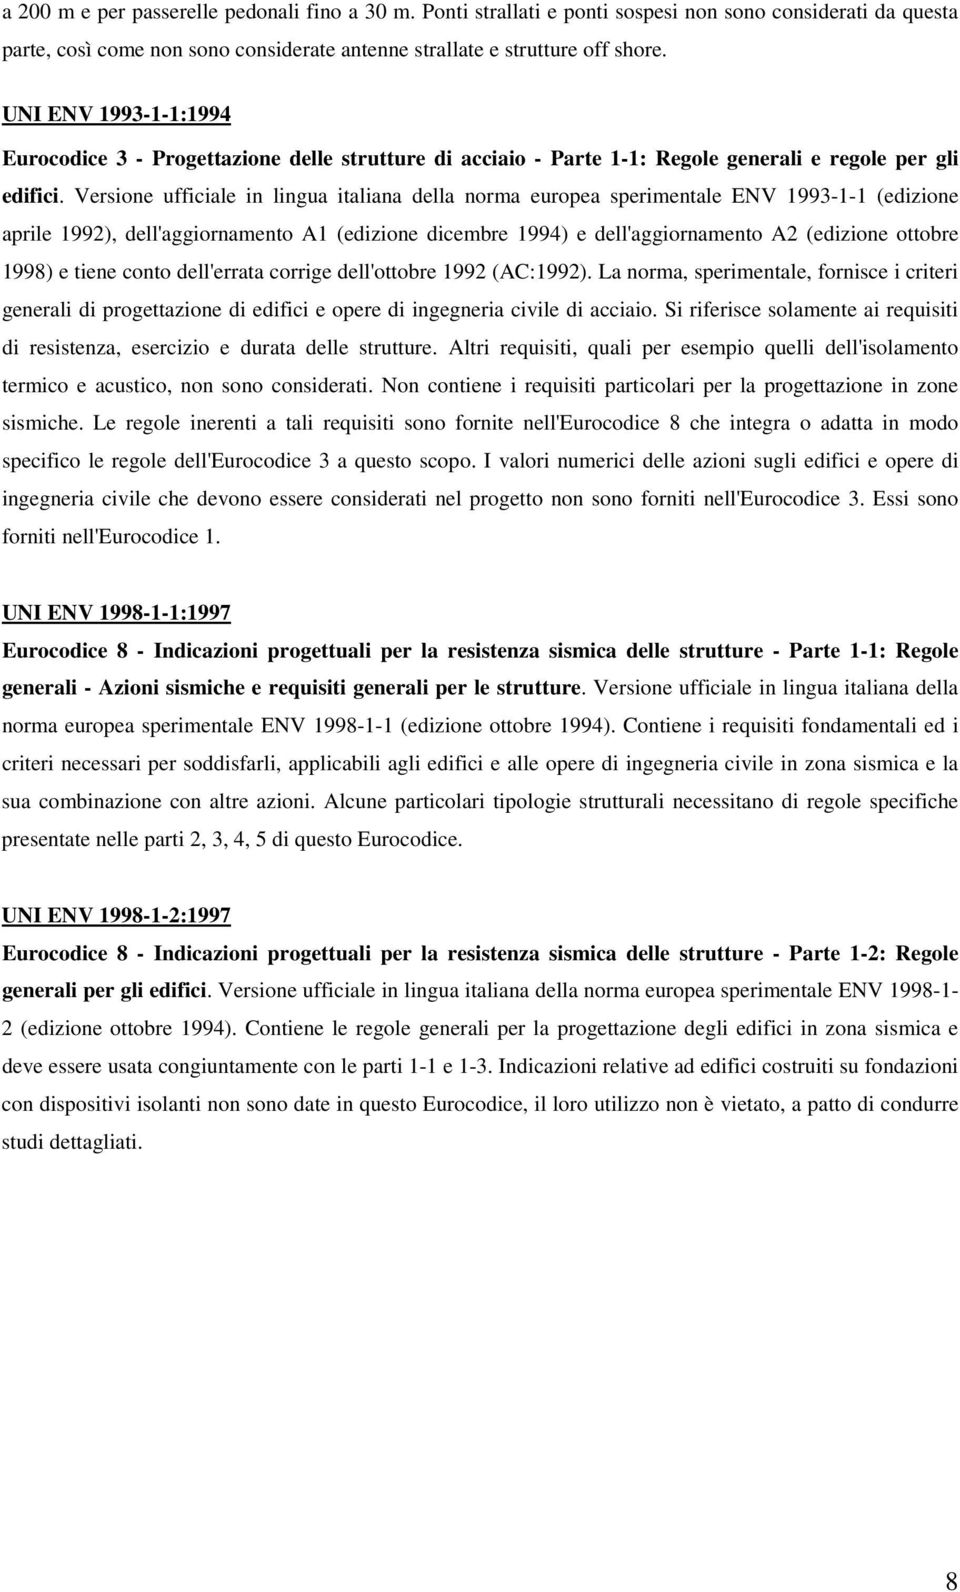 Versione ufficiale in lingua italiana della norma europea sperimentale ENV 1993-1-1 (edizione aprile 1992), dell'aggiornamento A1 (edizione dicembre 1994) e dell'aggiornamento A2 (edizione ottobre